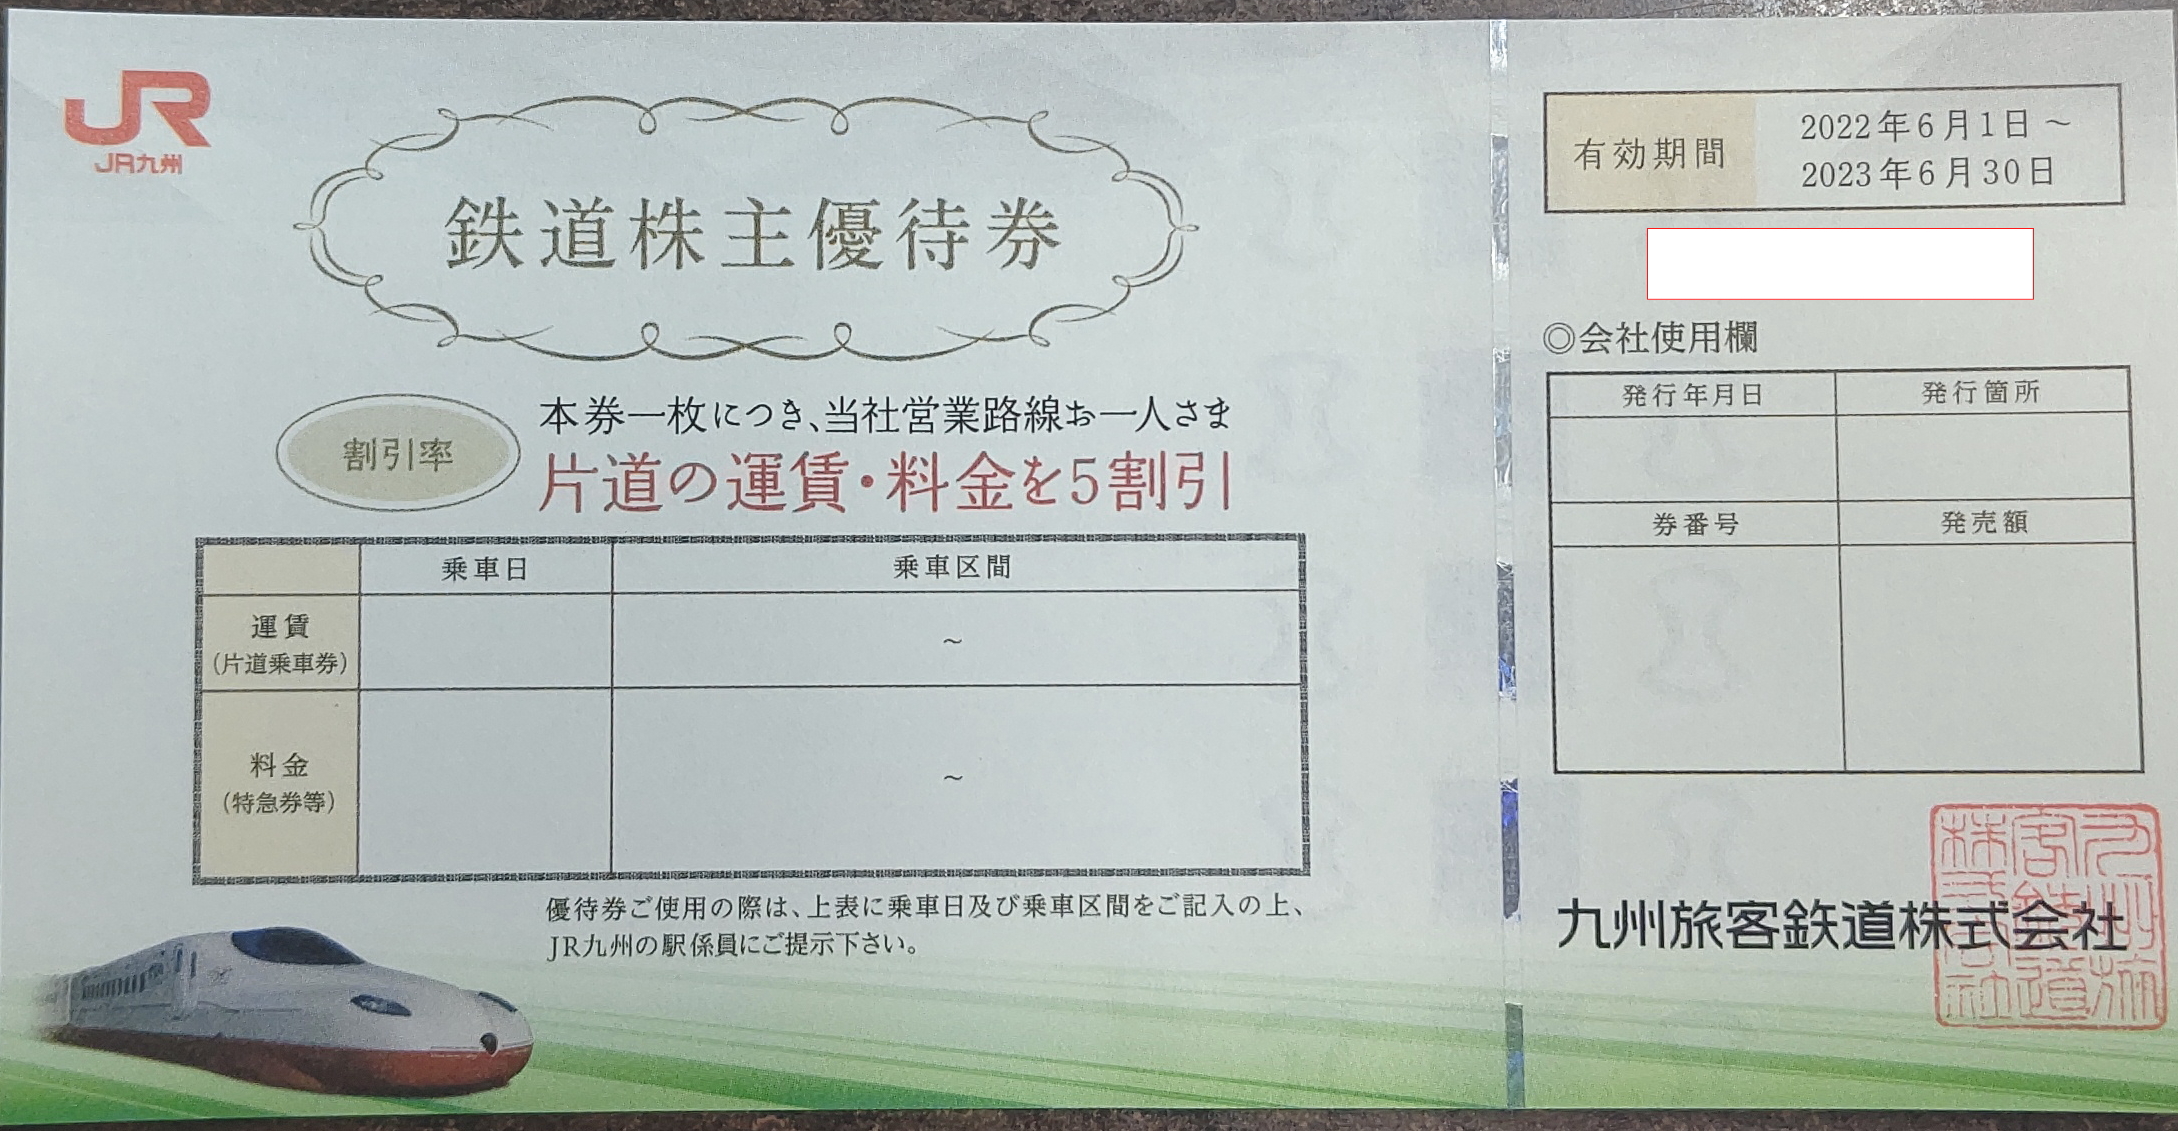 チケットカプリ オンラインストア / 【JR九州】株主優待50%割引券 2023年5月末期限